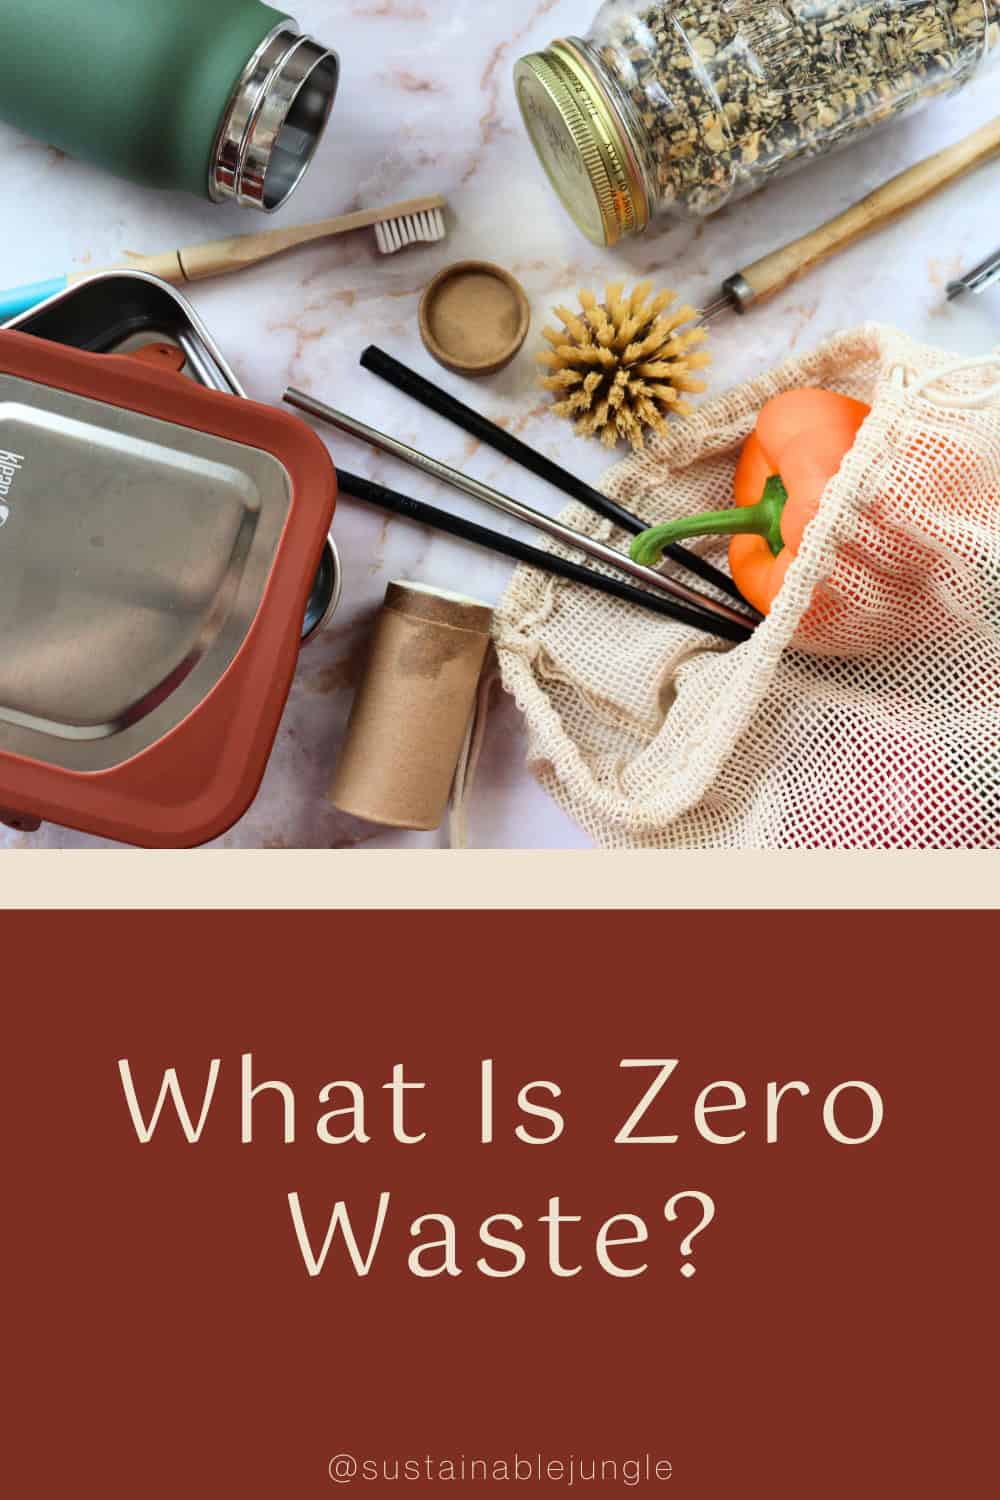 What Is Zero Waste? Image by Sustainable Jungle #whatiszerowaste #whatdoeszerowastemean #zerowastedefinition #zerowasteconcept #conceptofzerowaste #circulareconomy #sustainablejungle